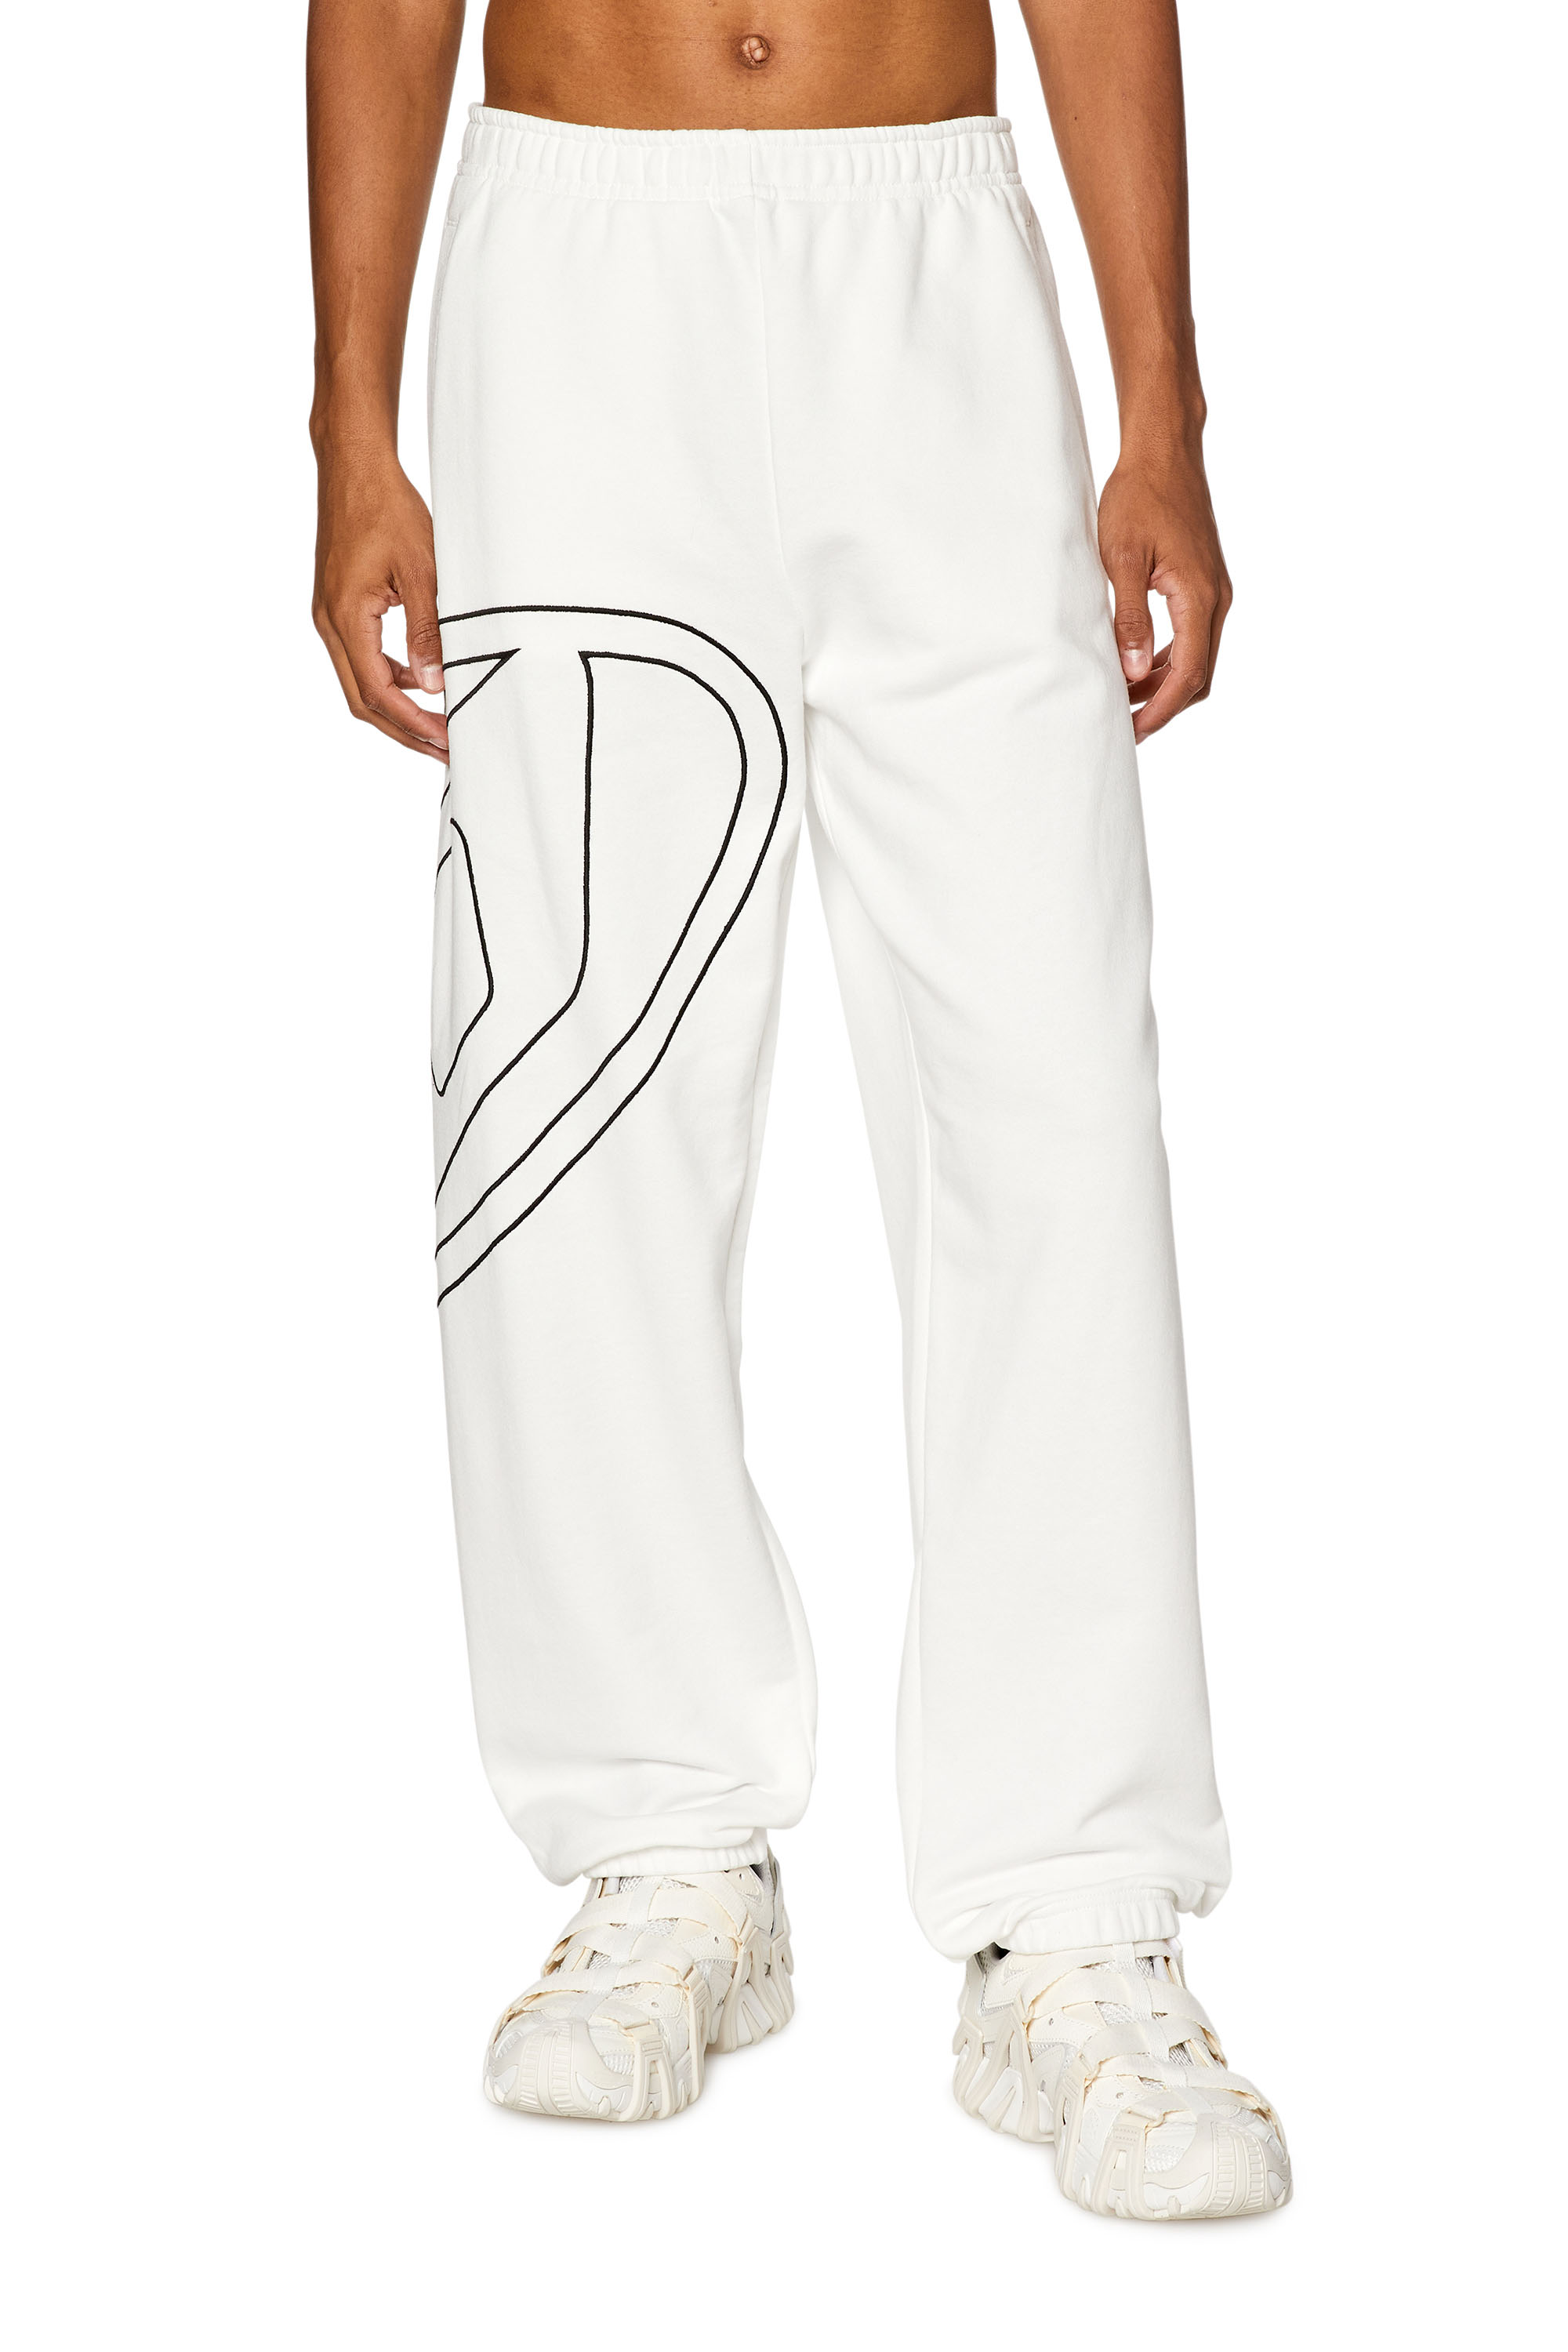 Diesel - Pantalones deportivos con oval D extragrande - Pantalones - Hombre - Blanco